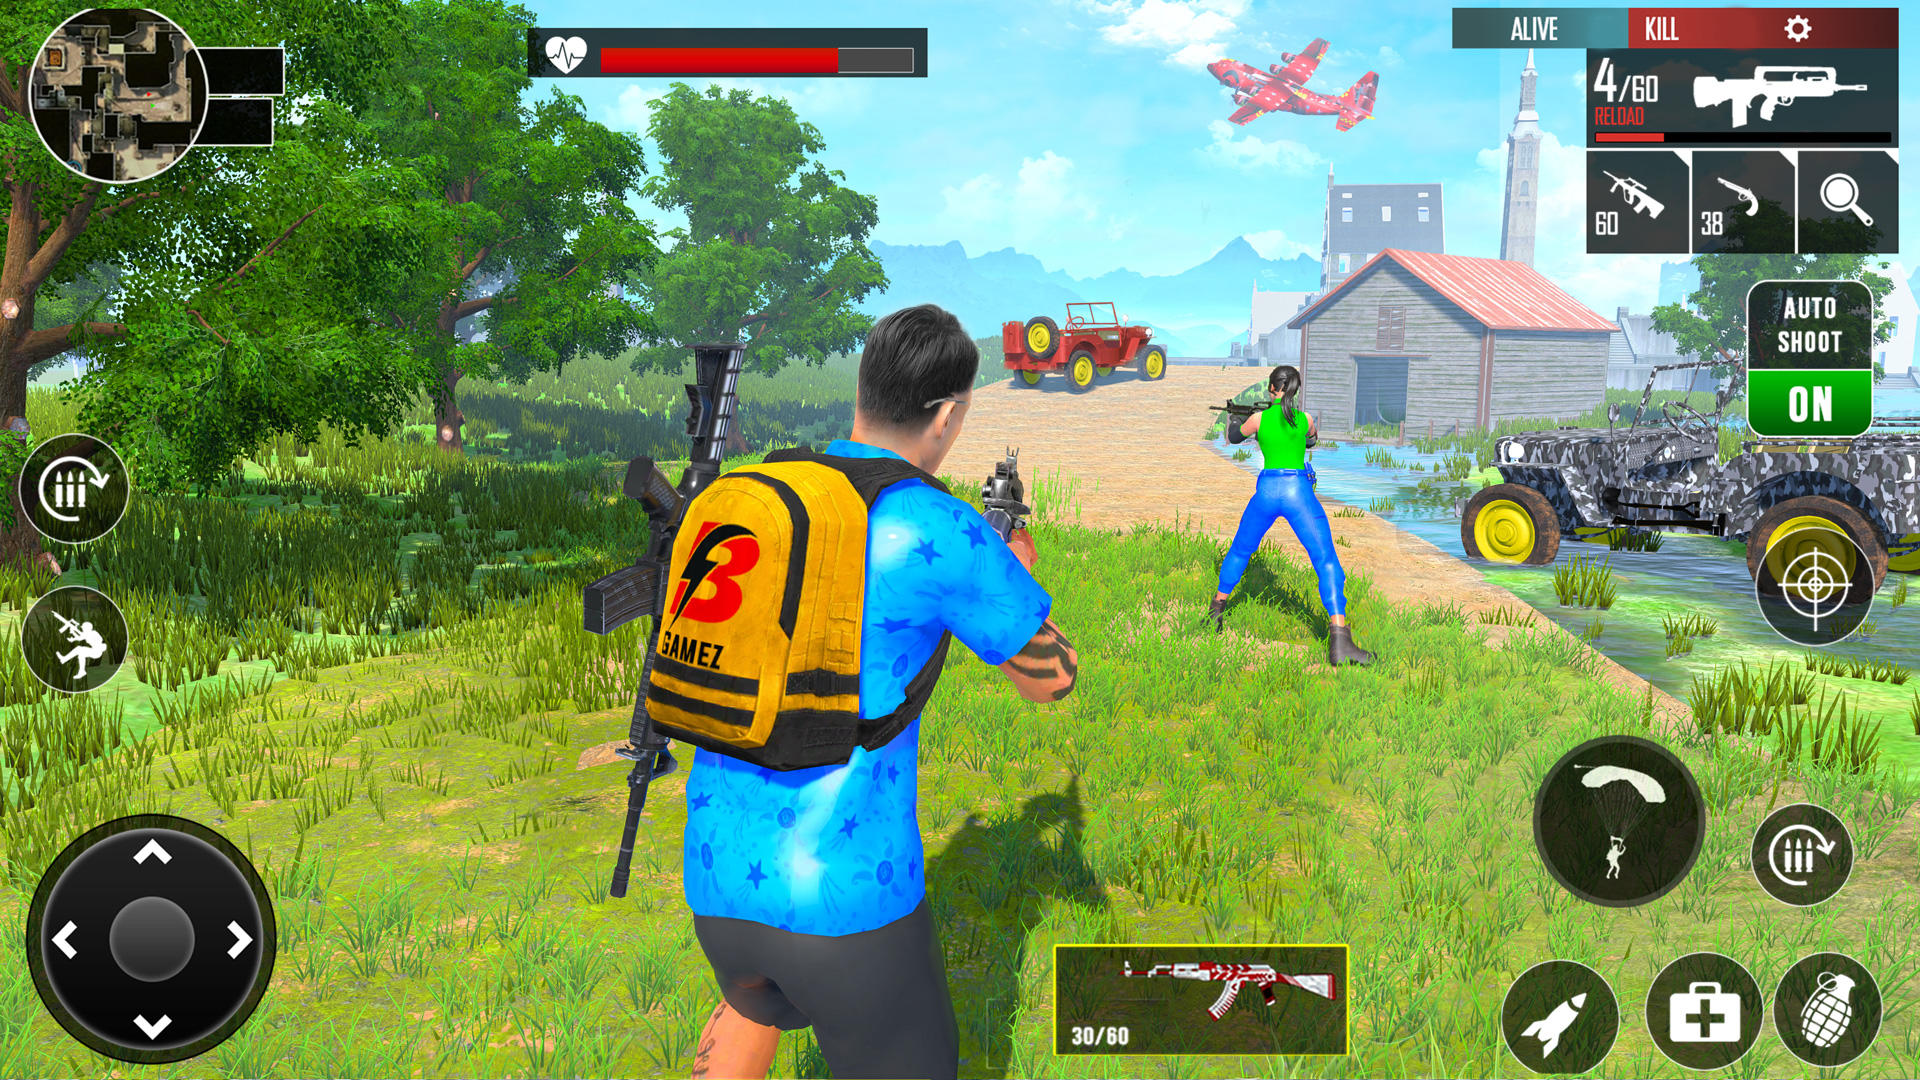 Screenshot 1 of juegos de disparos fps: juegos de armas 3.5